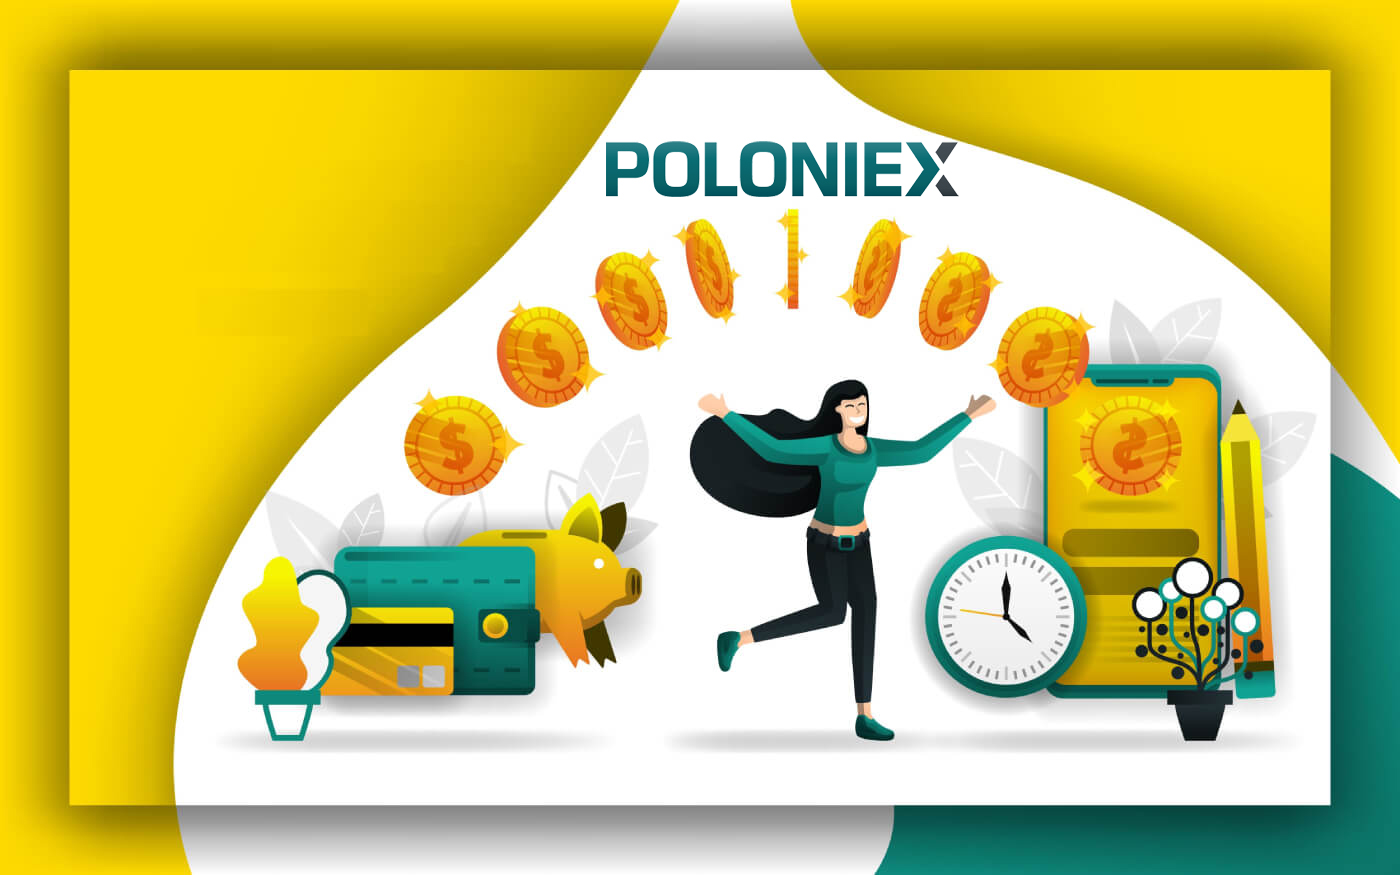  Poloniex में पैसे कैसे निकालें और जमा कैसे करें